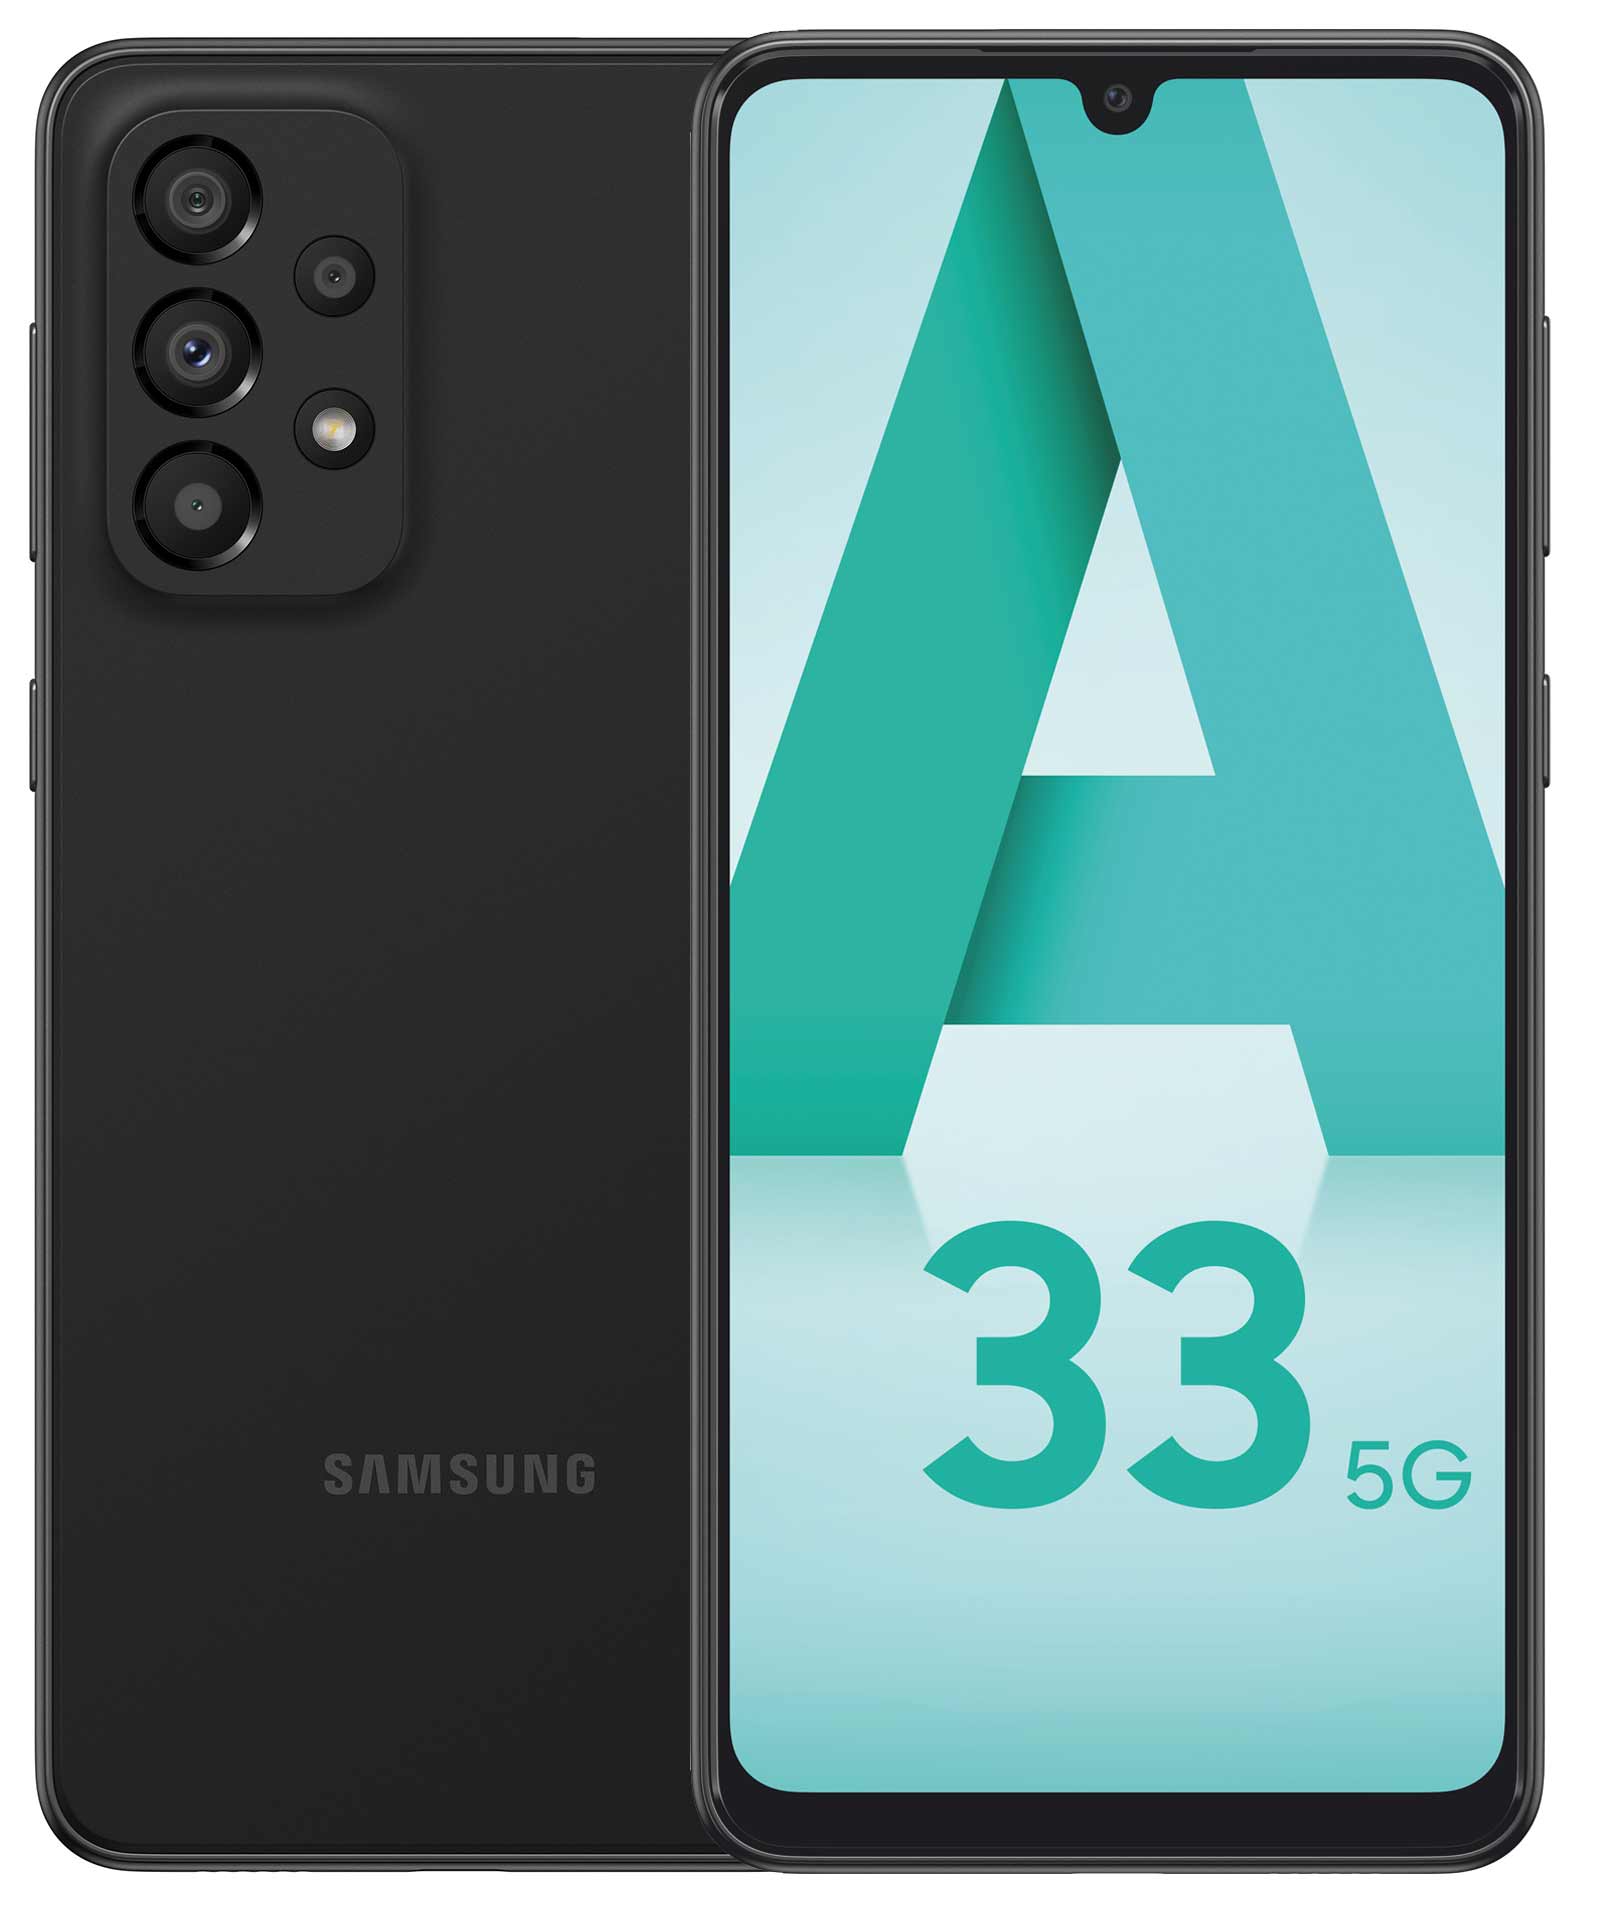 Опубликованы полные характеристики Samsung Galaxy A33 5G, который выйдет 17 марта